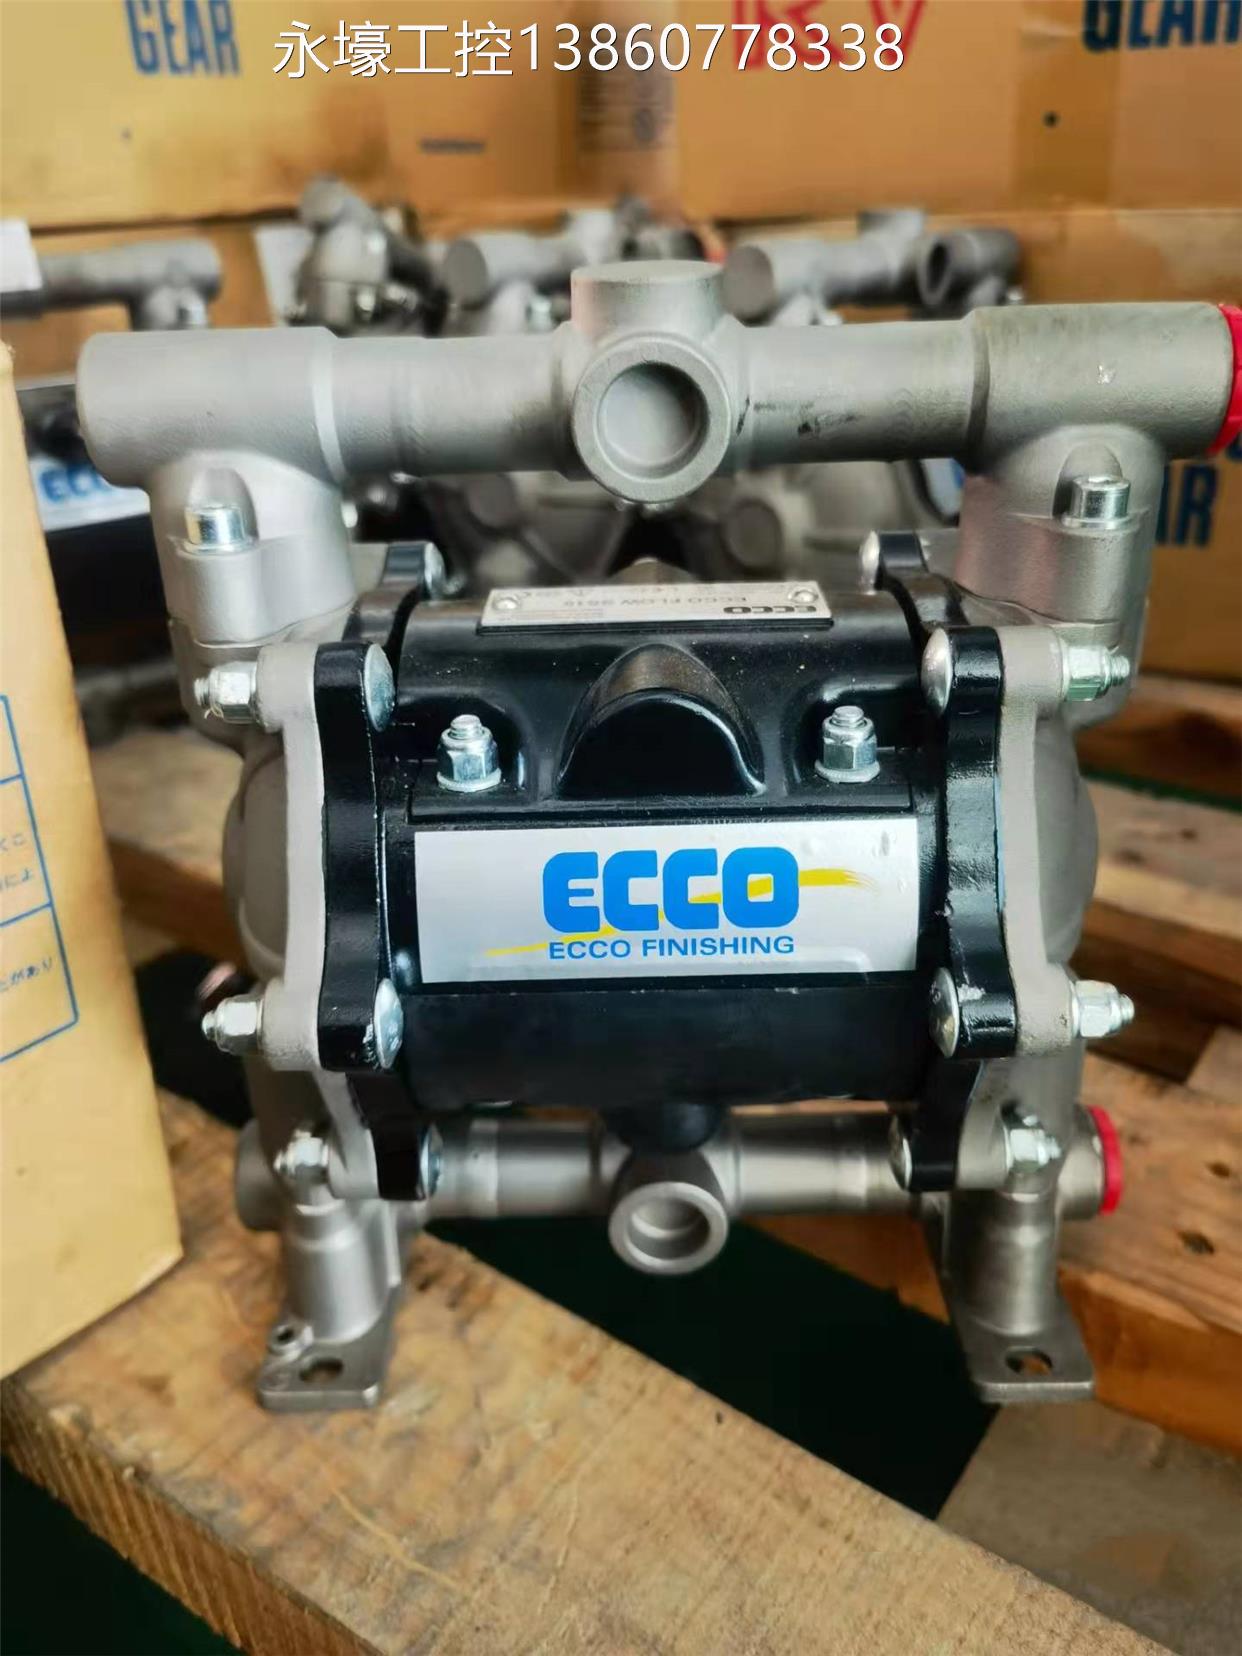 【EC C1ECCOO】瑞典ECO FLOWSS5气动双隔膜泵/涂料油漆输送泵C议